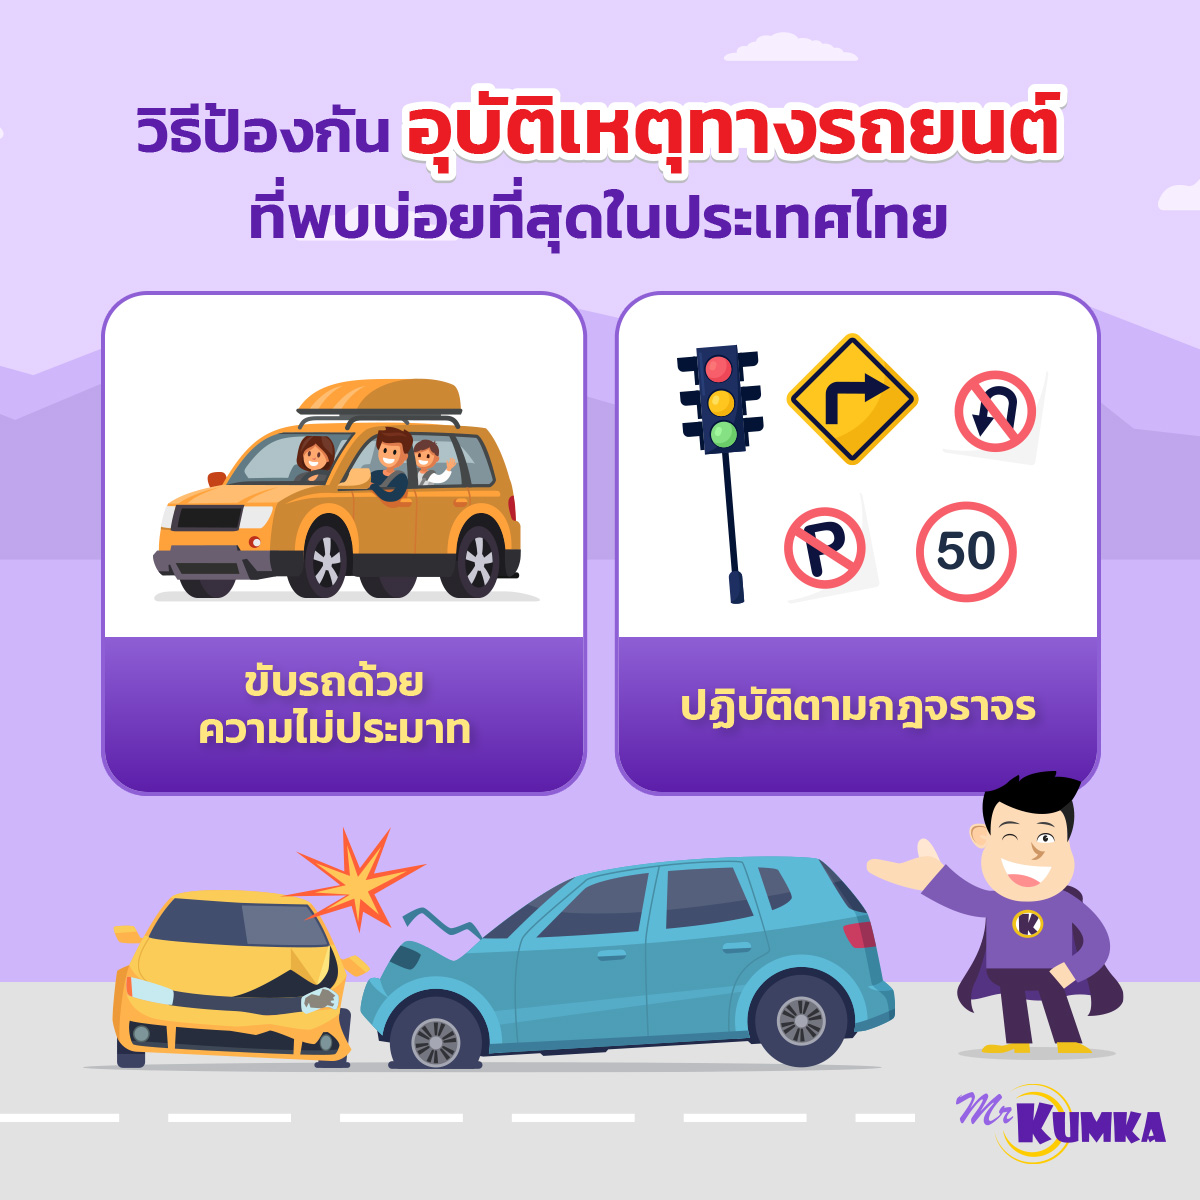 วิธีป้องกันอุบัติเหตุทางรถยนต์ ที่พบบ่อยที่สุดในประเทศไทย